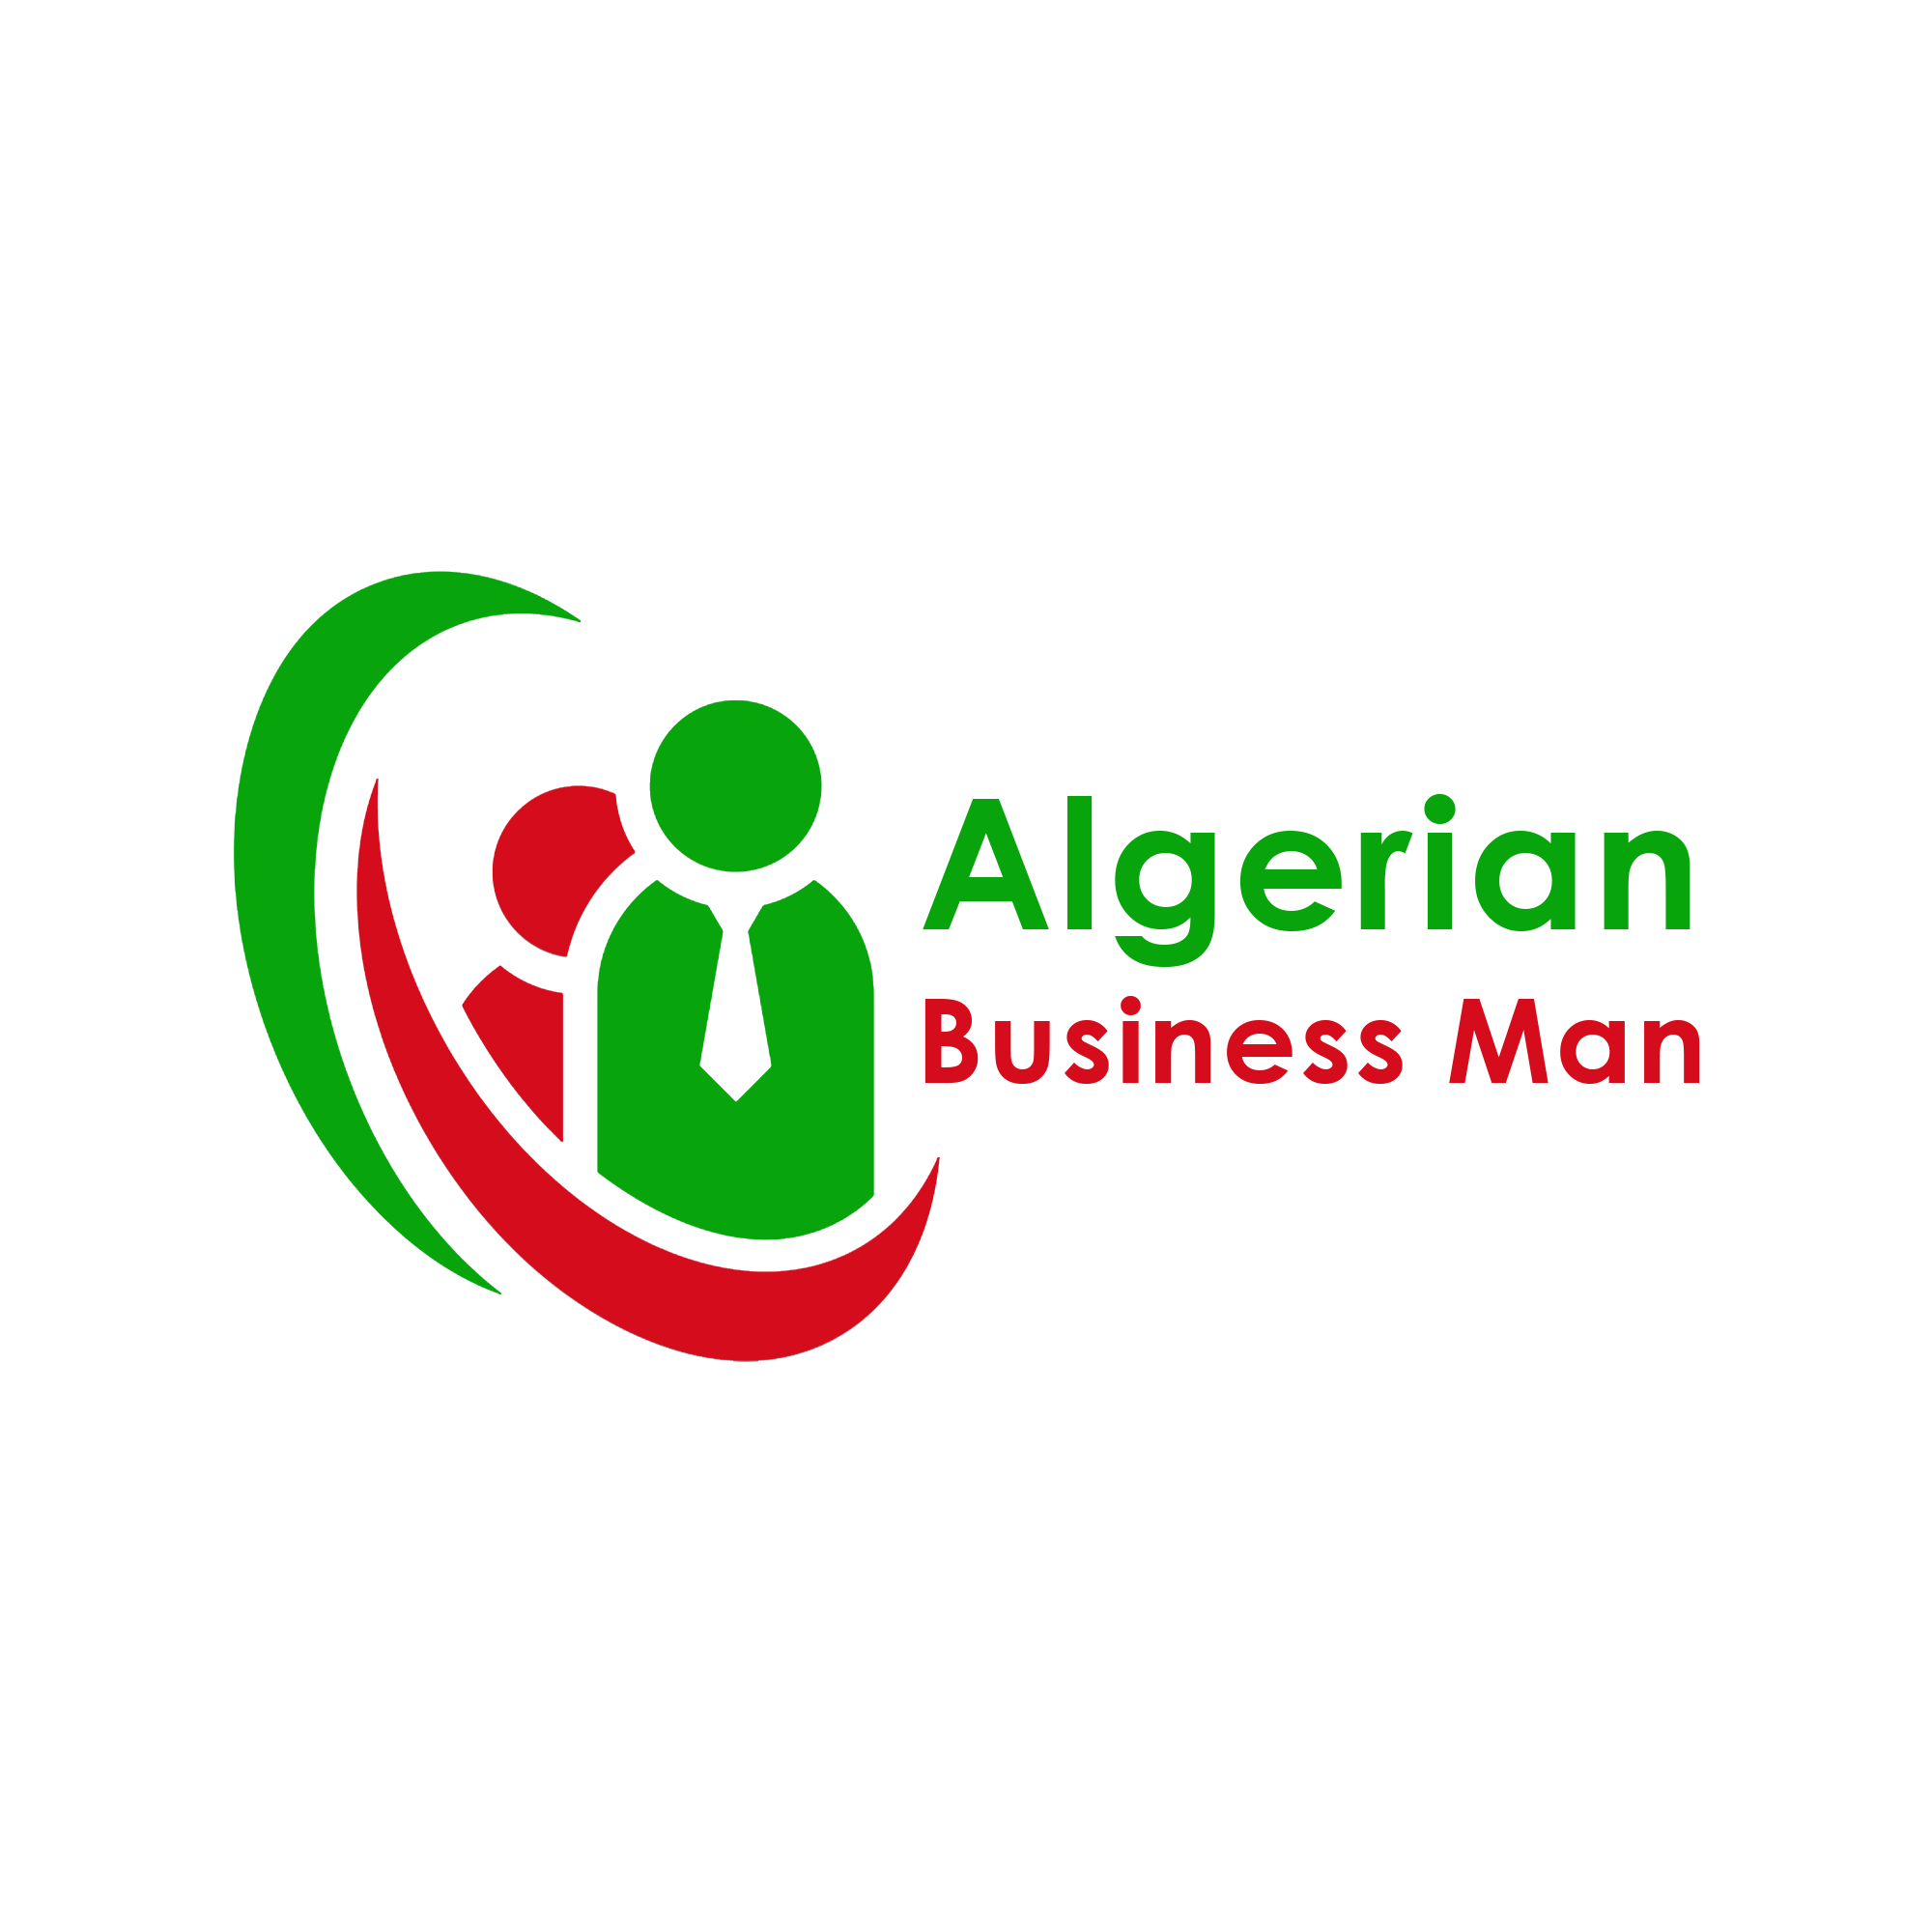 ALGERIAN BUSINESS MEN